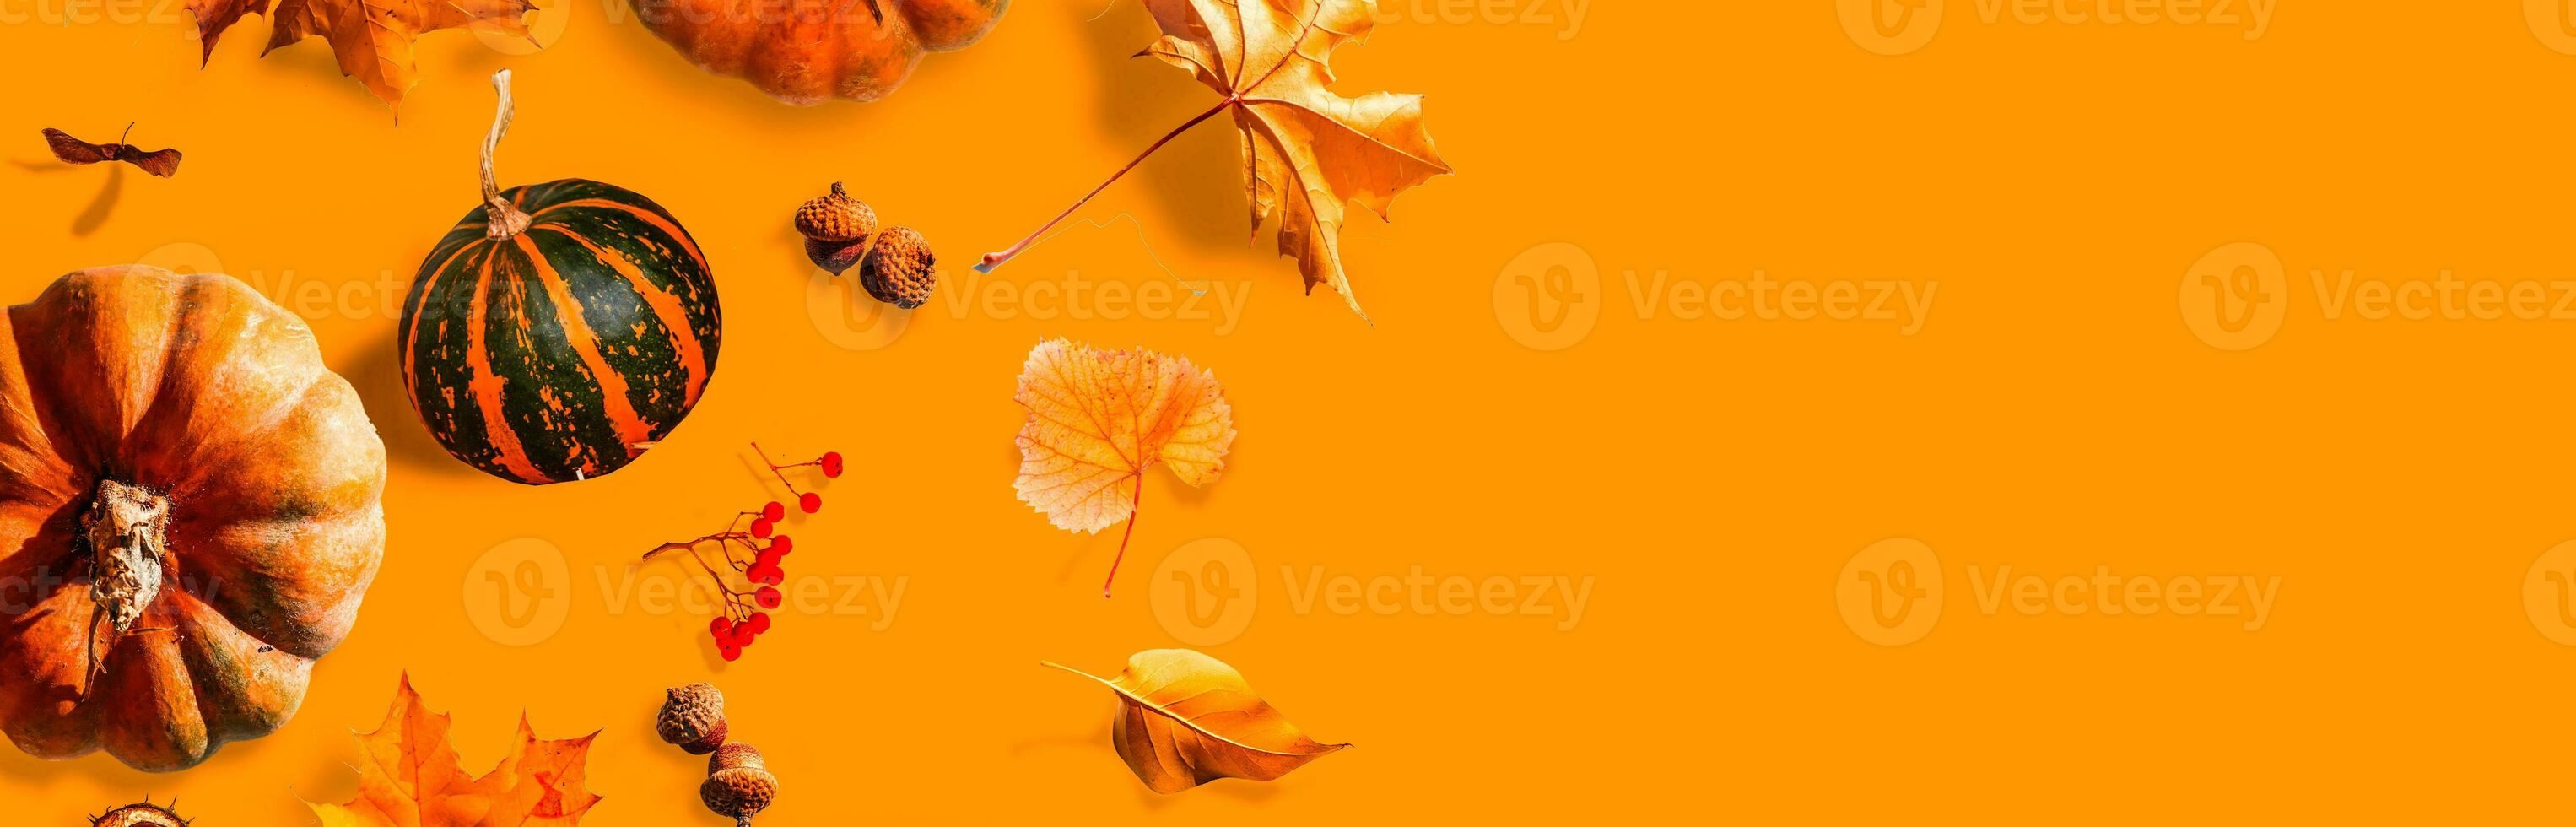 autunno scena con zucche, Halloween o ringraziamento sfondo, copia spazio foto